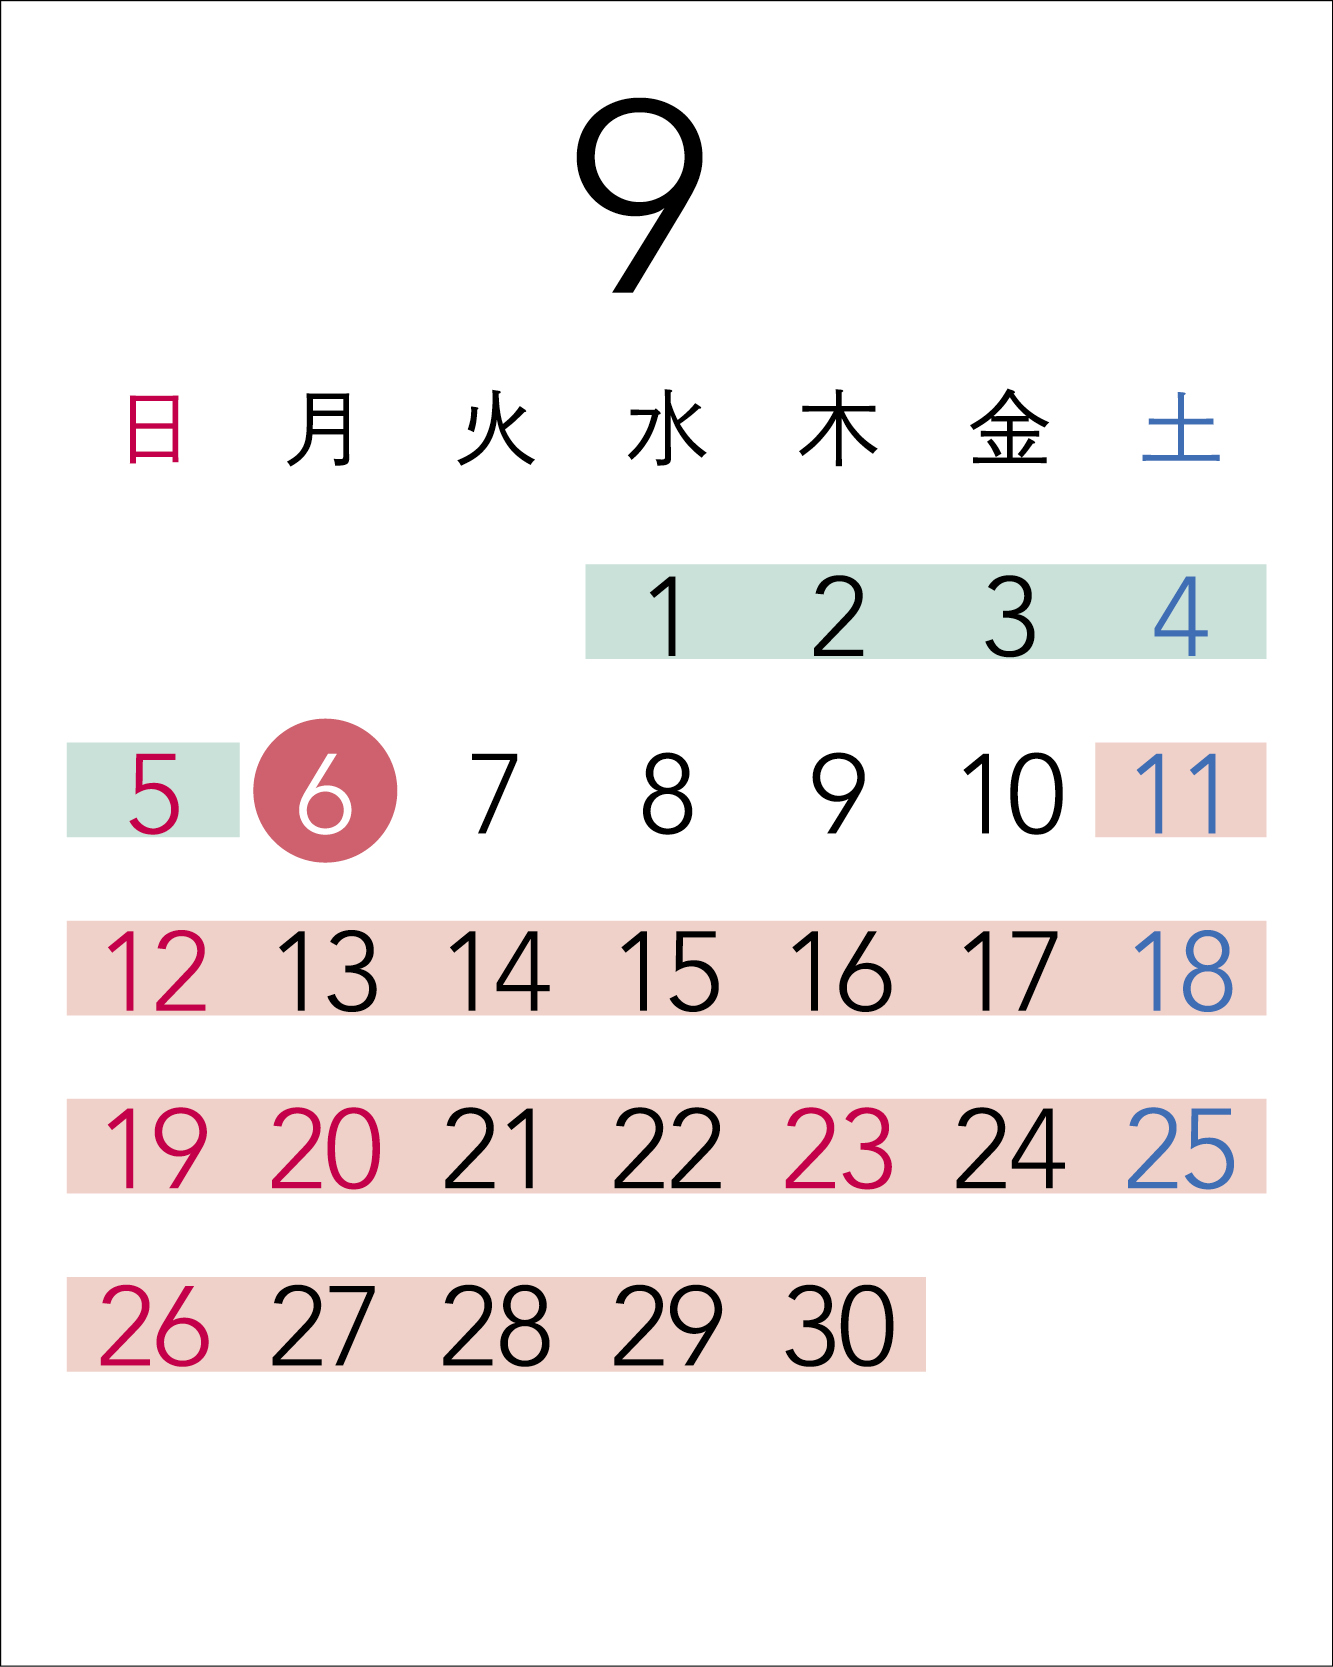 Calendar in September